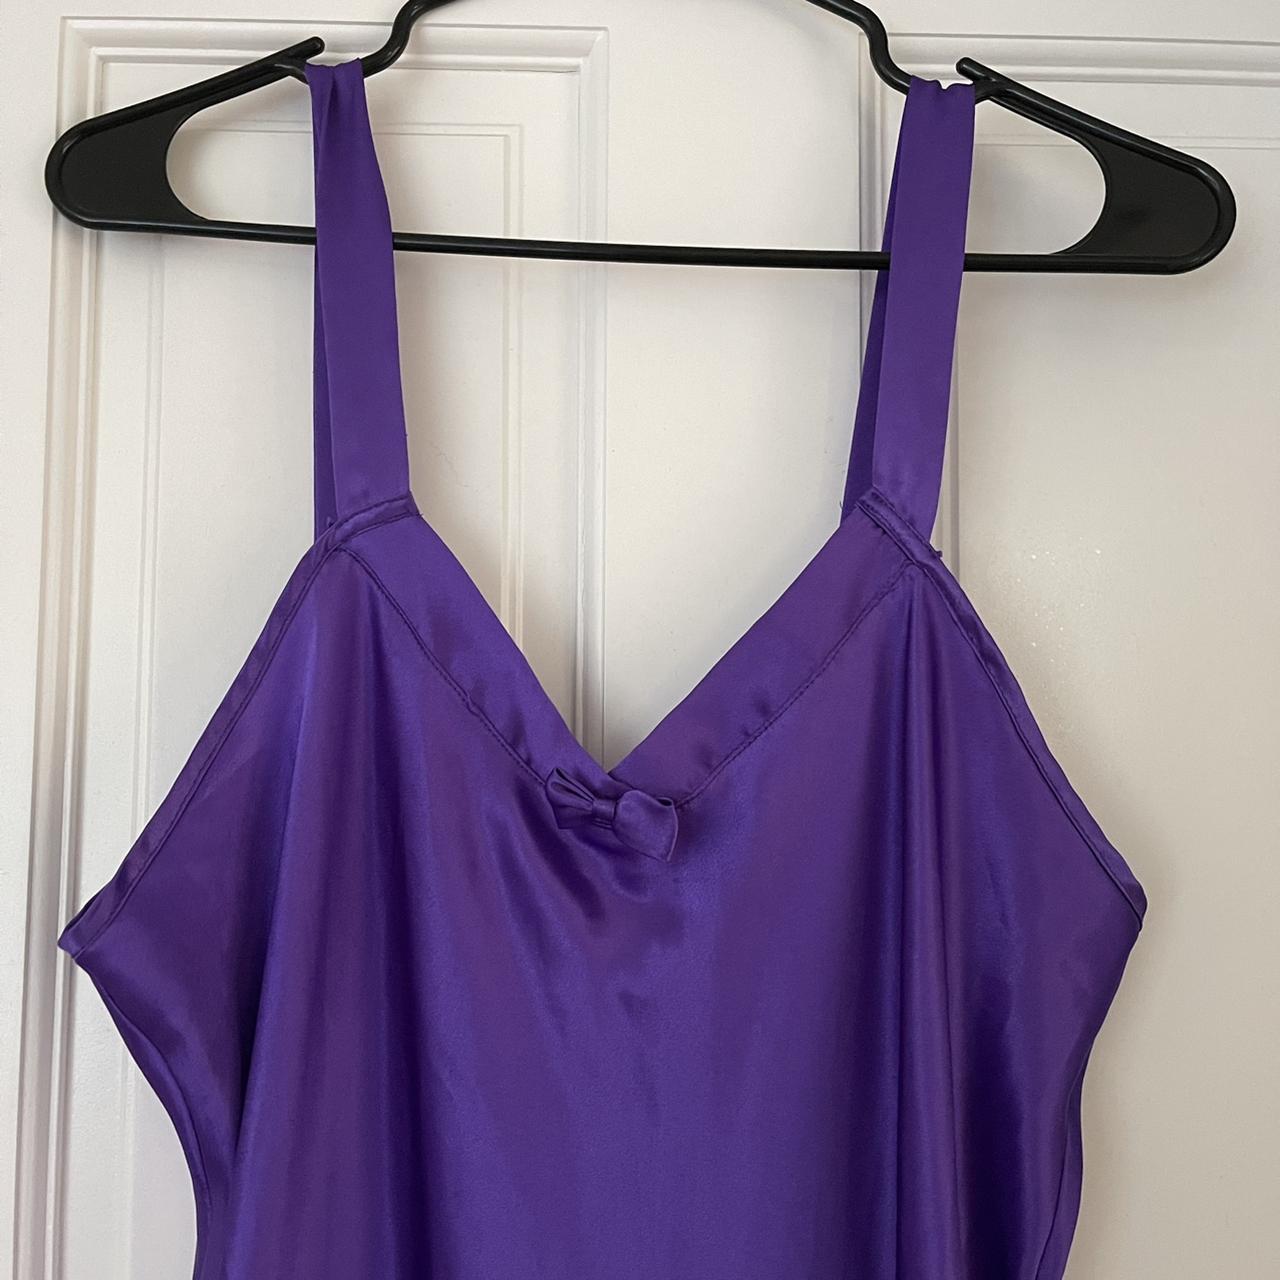 Long silky purple slip dress by California Dynasty!... - Depop